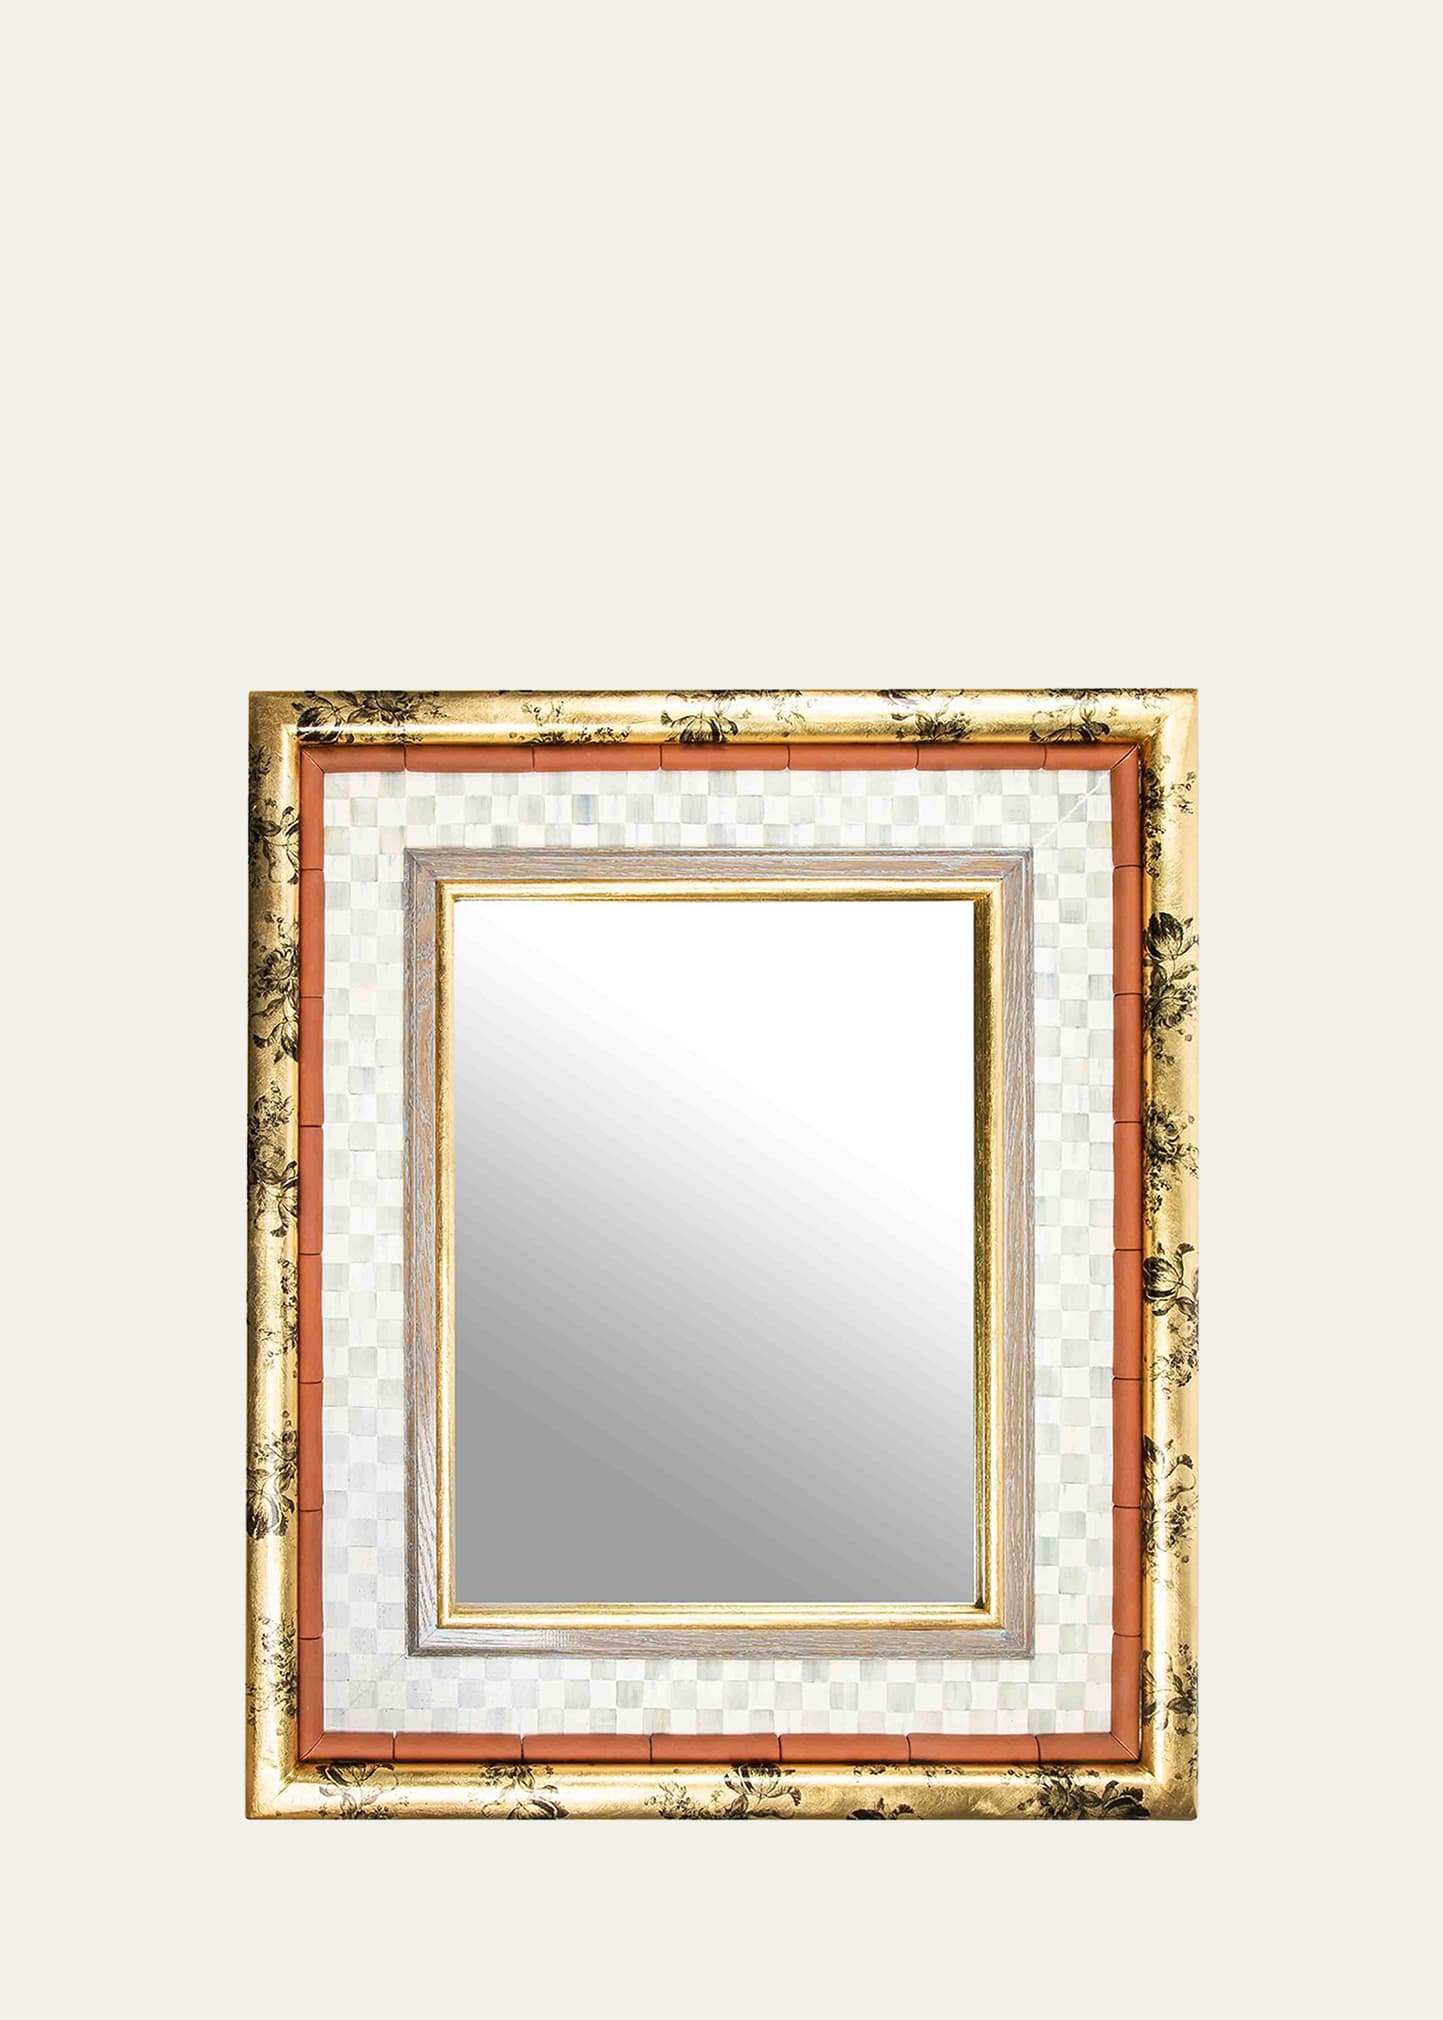 Nightshade 37" Wall Mirror